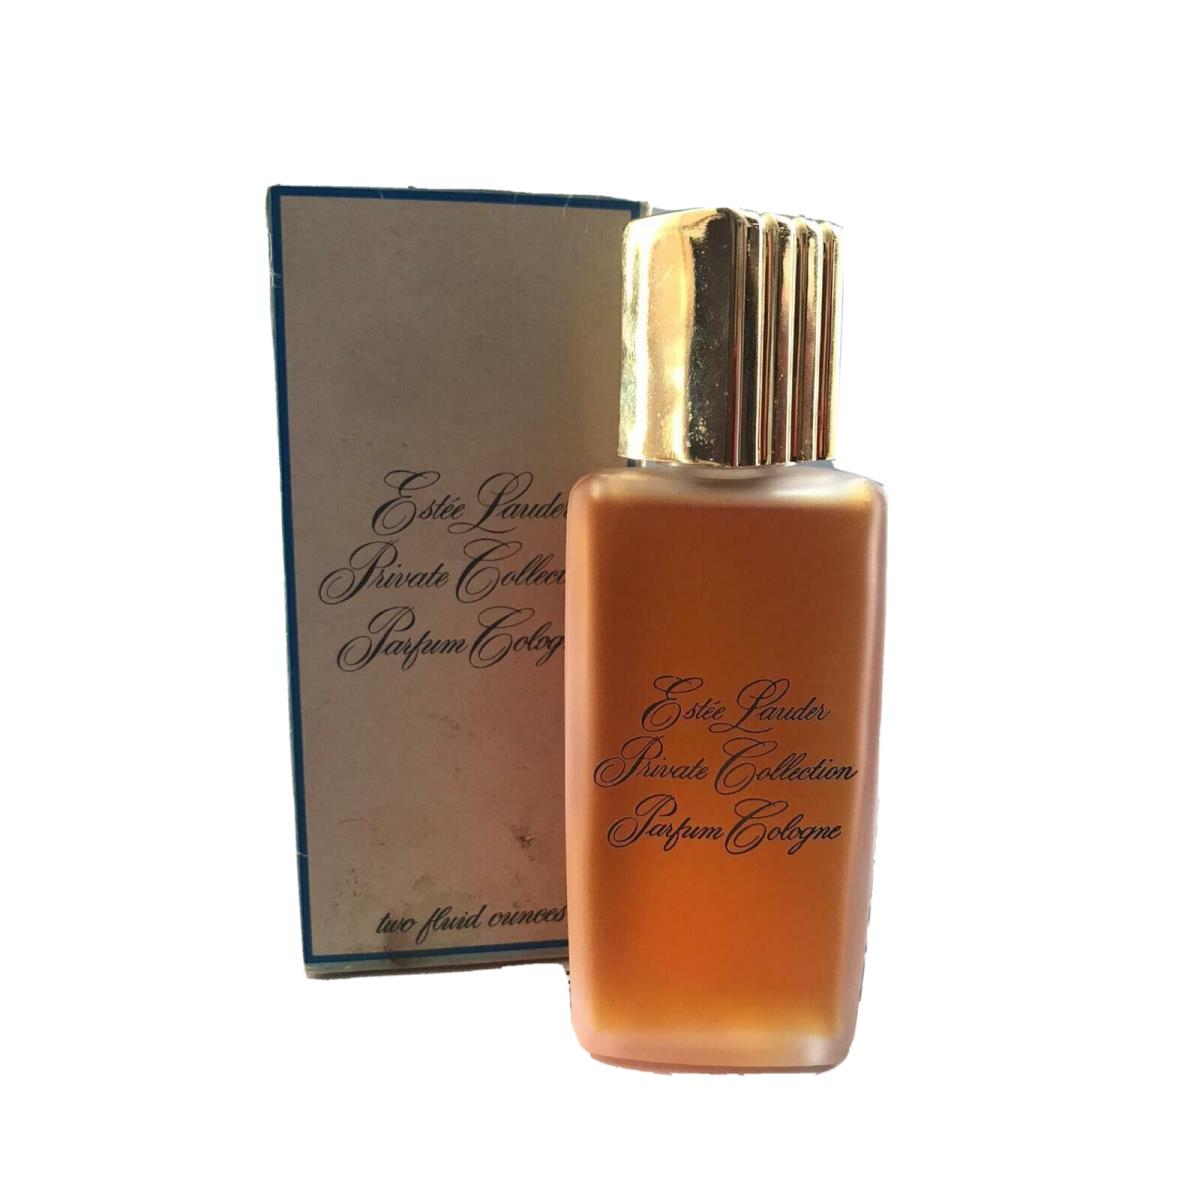 Estee Lauder Private Collection 2.0 Parfum Cologne Splash Women Perfume Rare Vtg